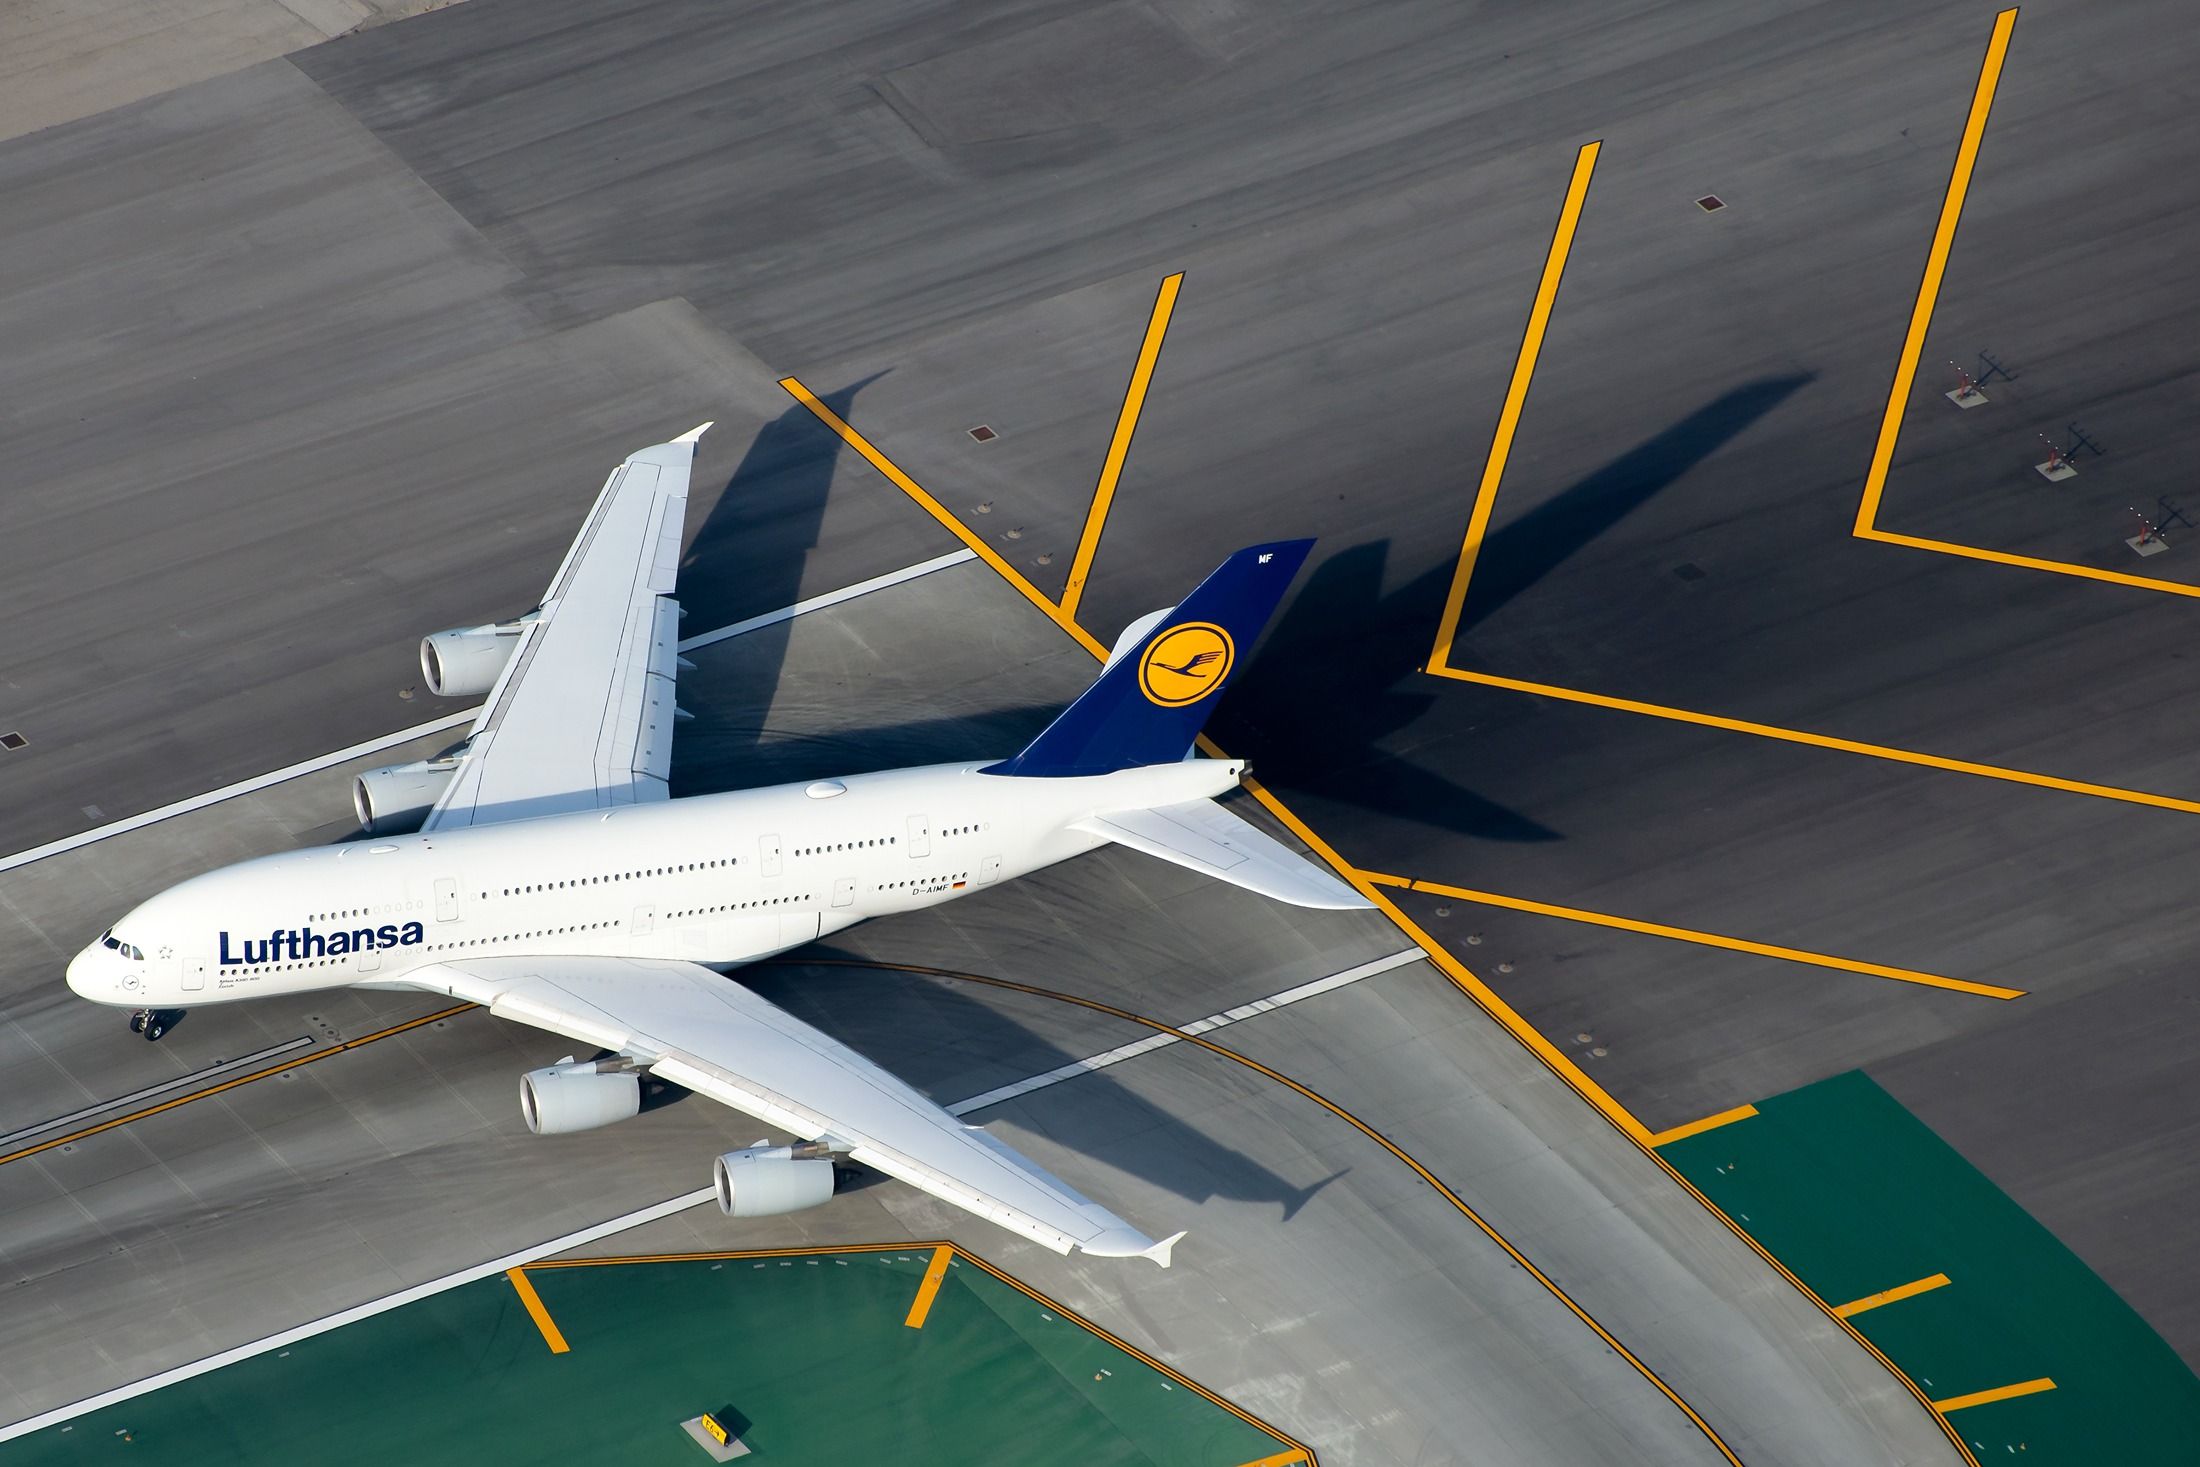 Lufthansa Airbus A380 at LAX